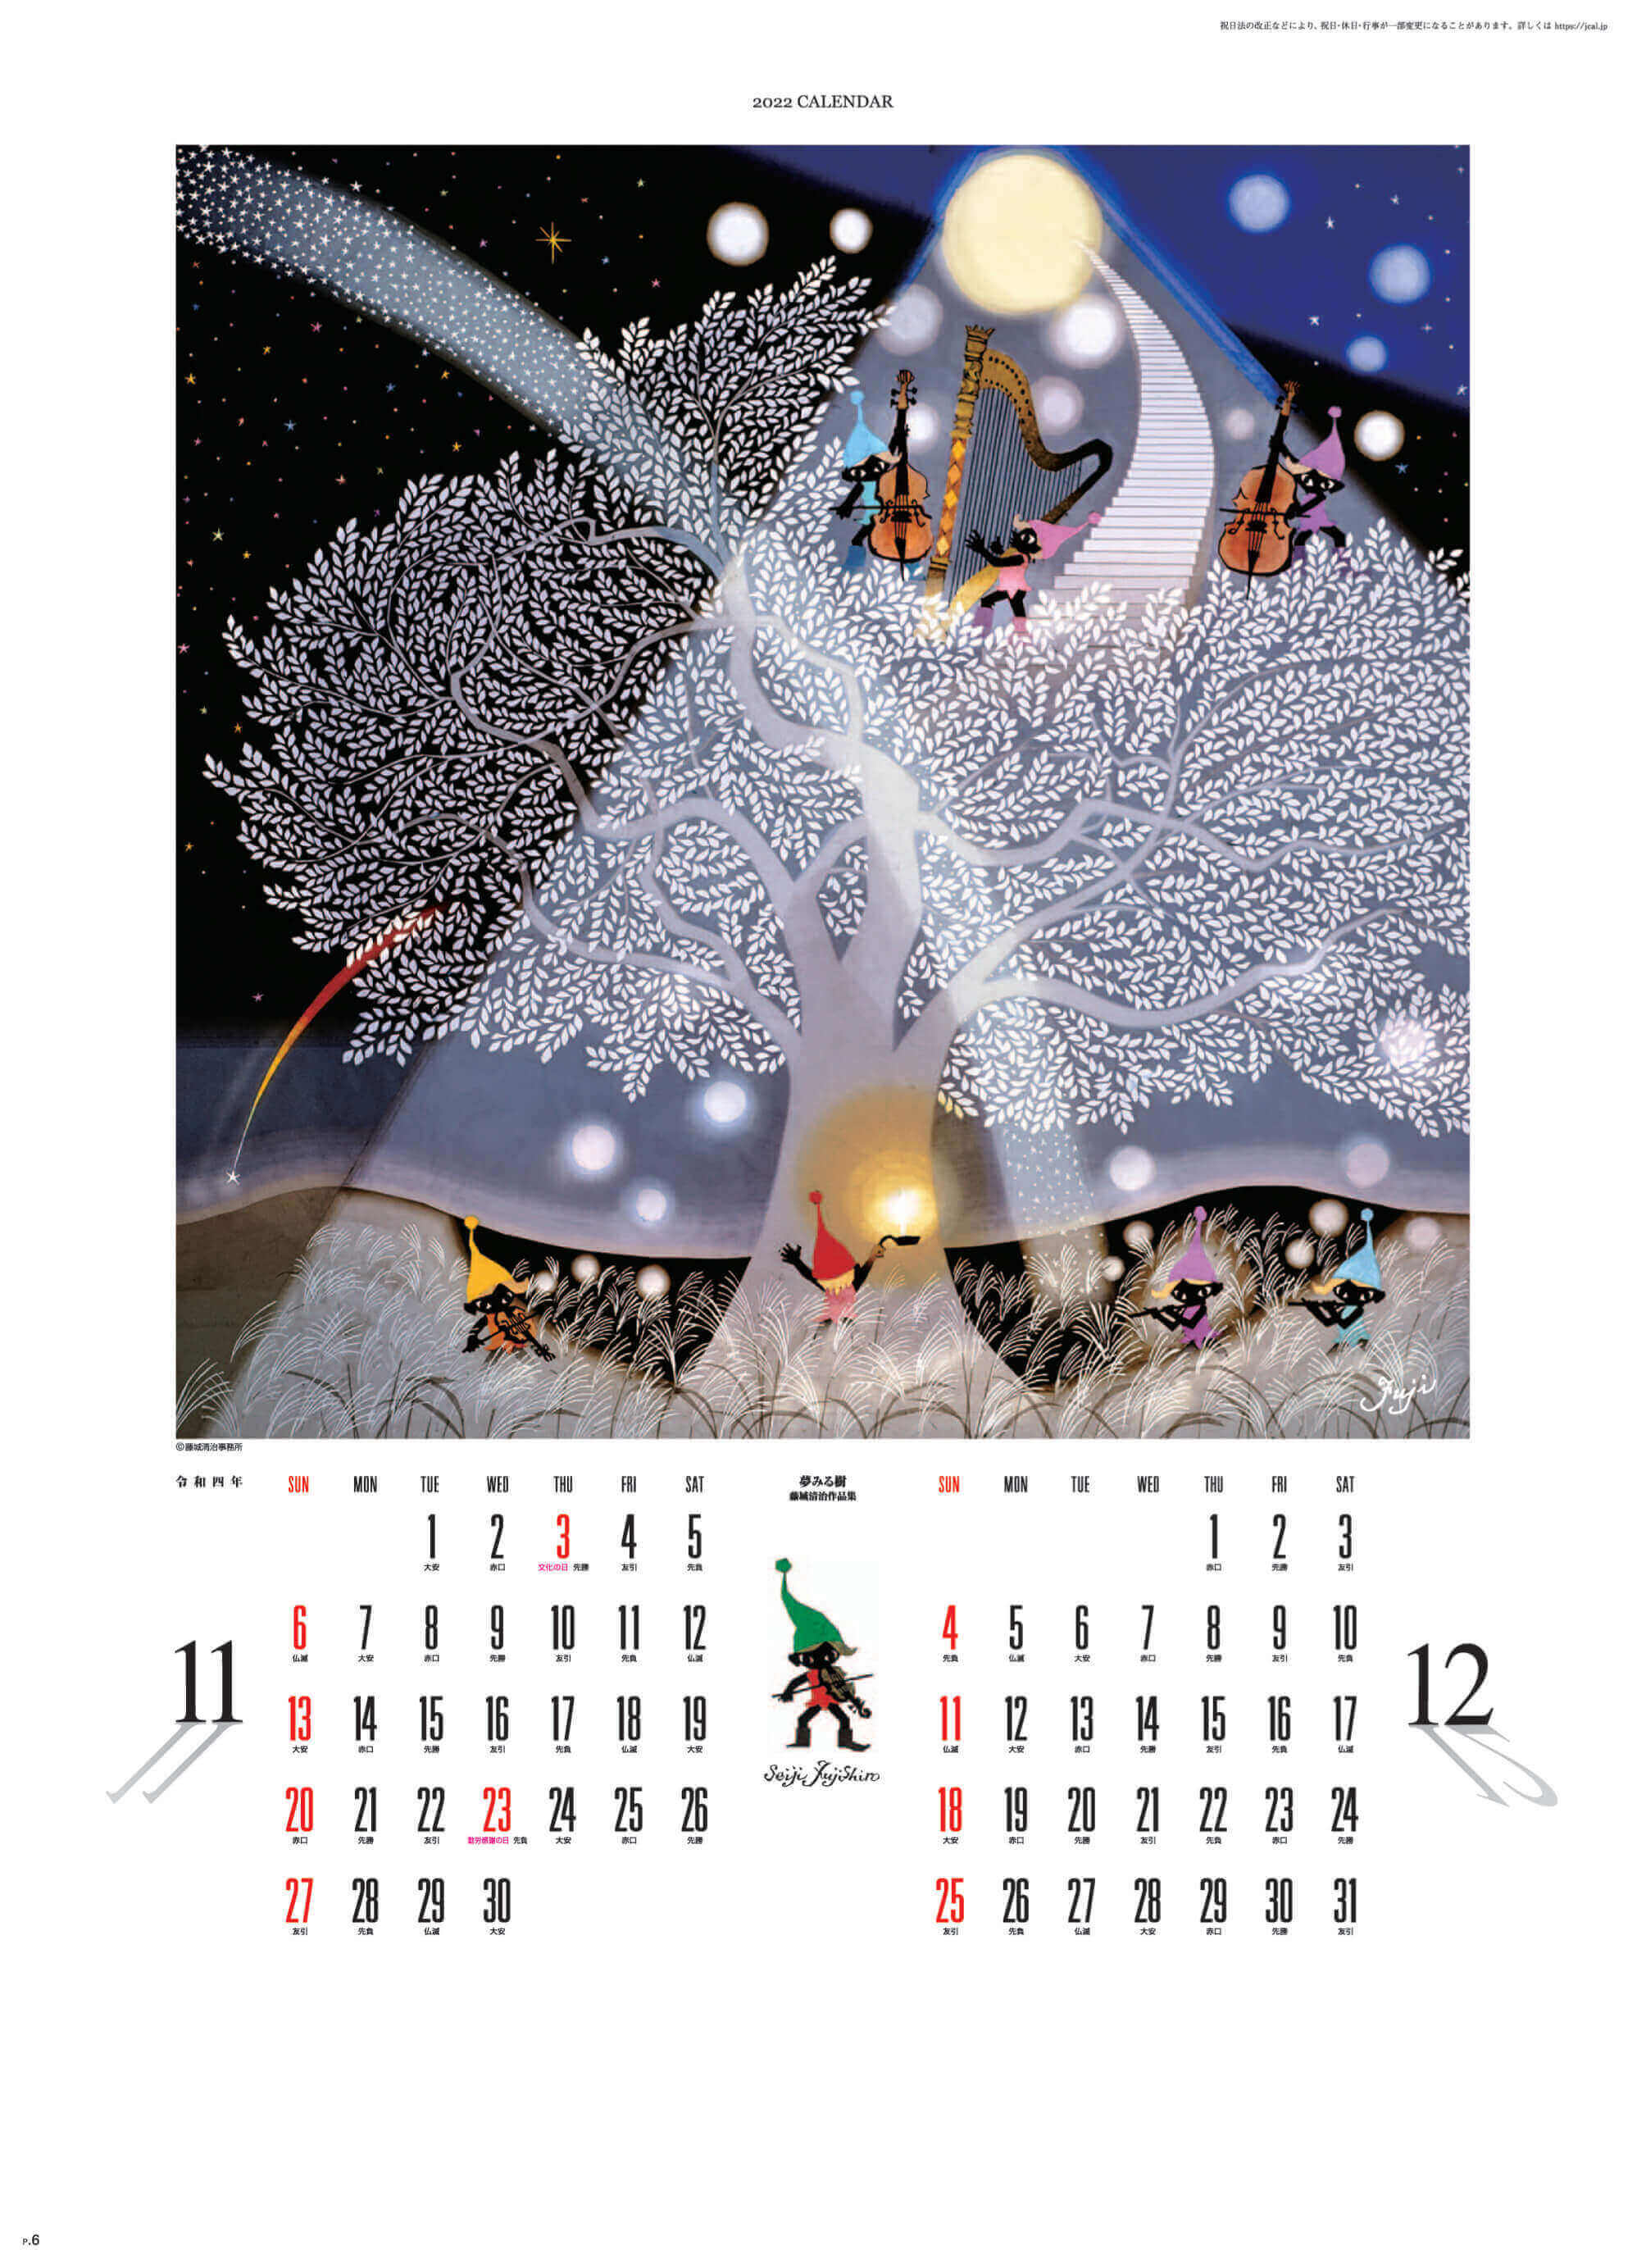 11-12月 夢みる樹 遠い日の風景から(影絵) 藤城清治 2022年カレンダーの画像